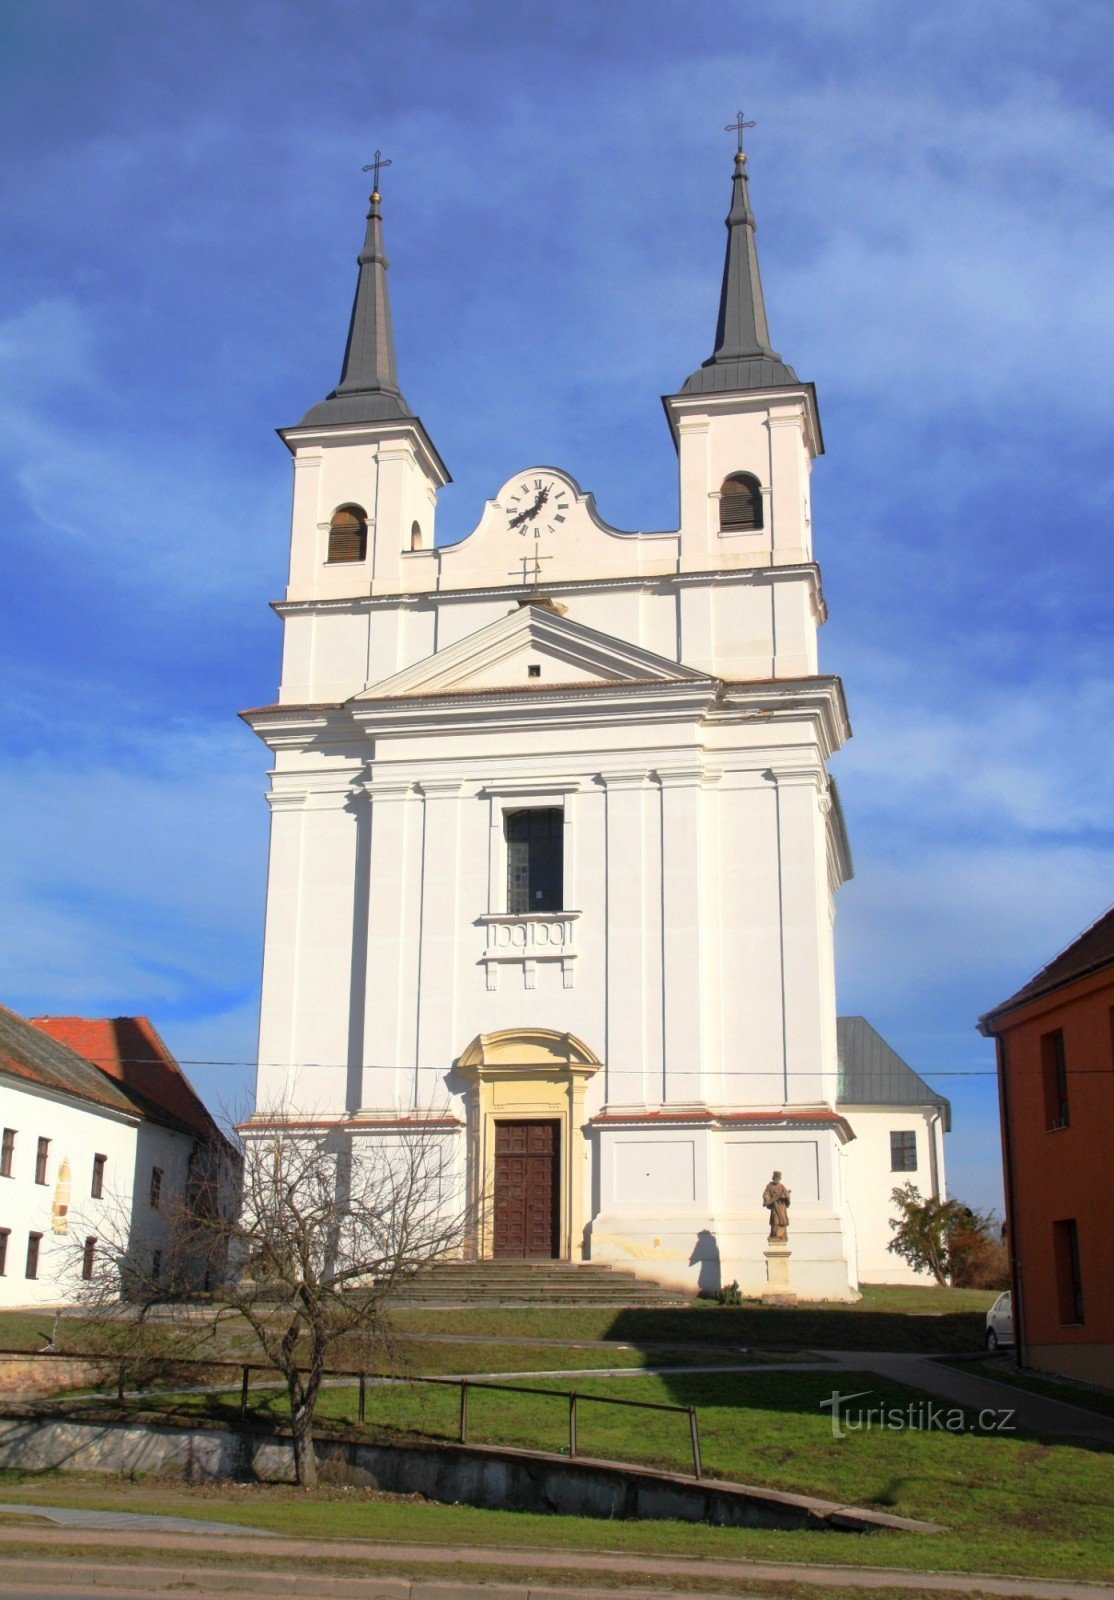 A característica dominante da cidade é a Igreja da Santíssima Trindade